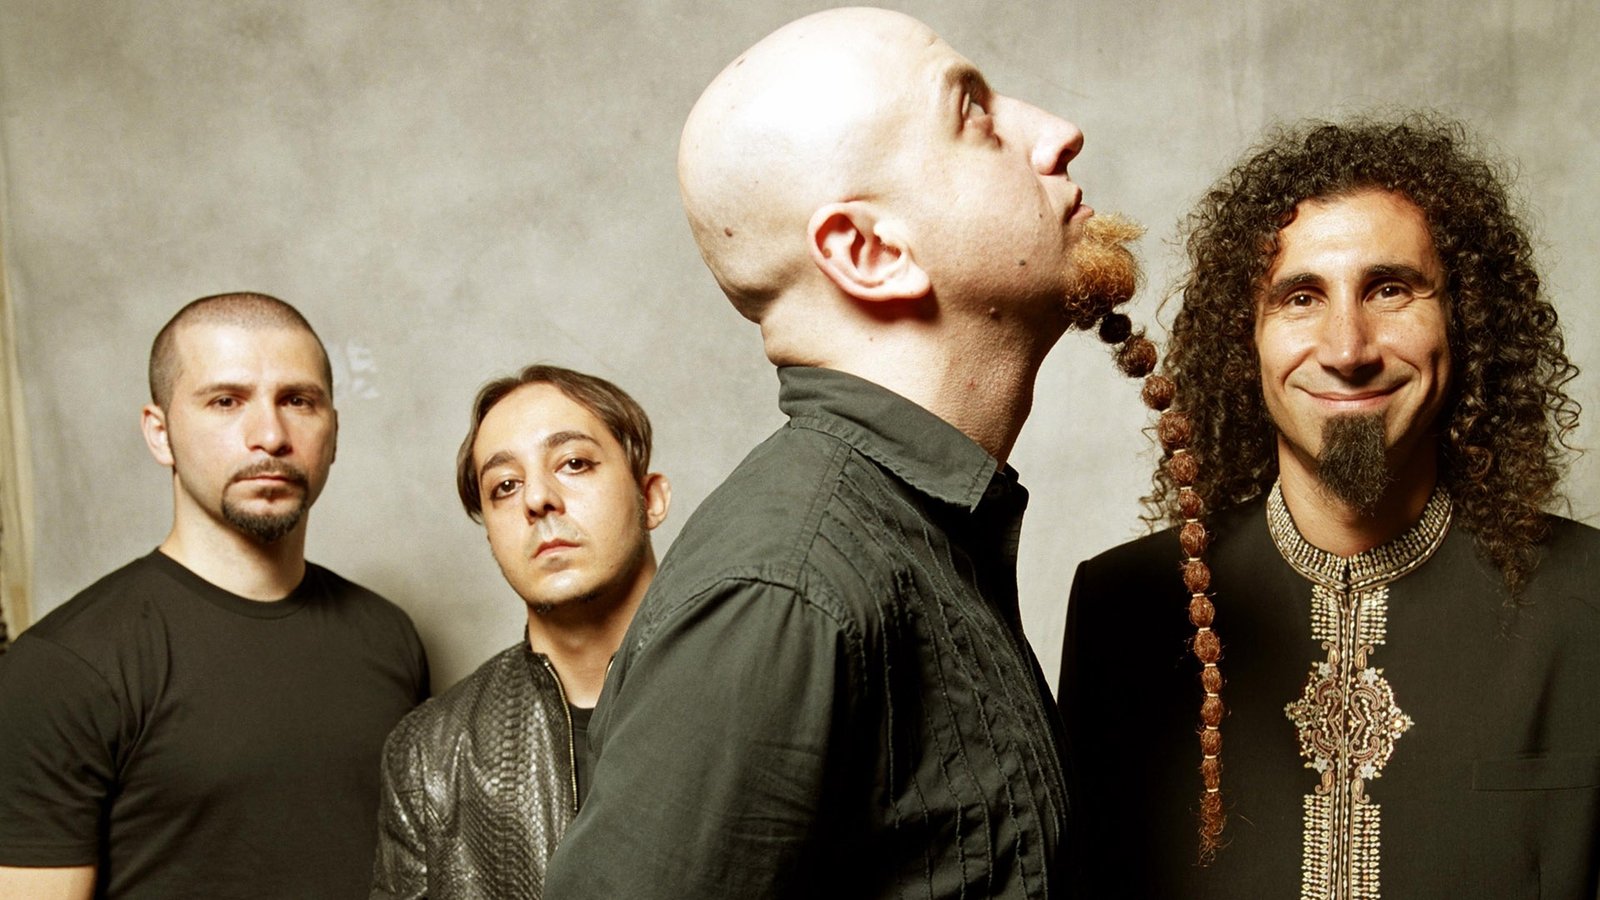 "Algunos miembros de la banda no pueden trabajar juntos": Shavo Odadjian, System of a Down